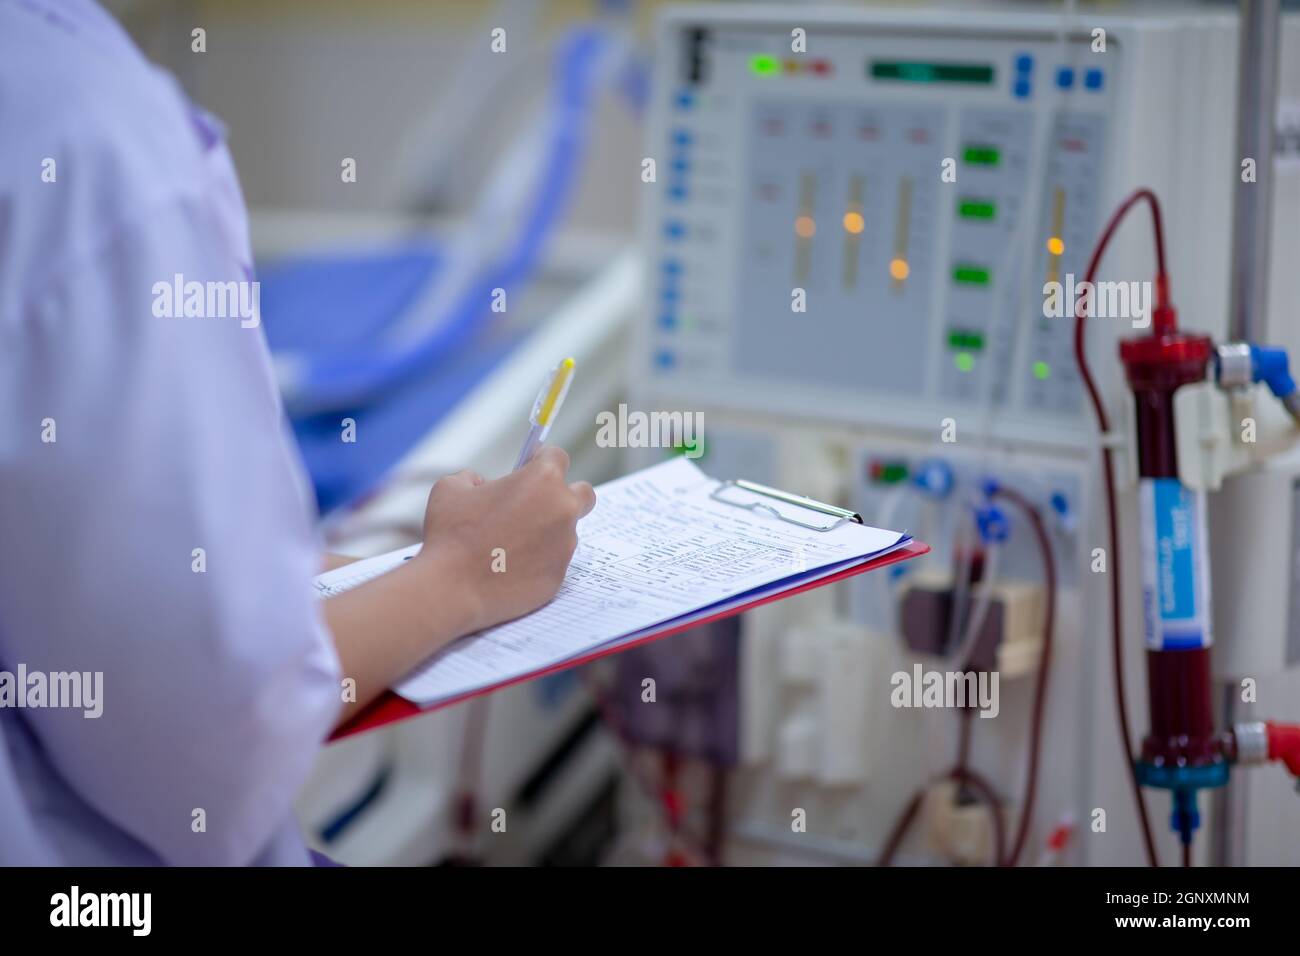 Die Dialysekrankenschwester überprüft das Dialysegerät vor dem Ersatz einer Nierenfunktionsstörung oder Nierenversagen auf der Intensivstation. Stockfoto